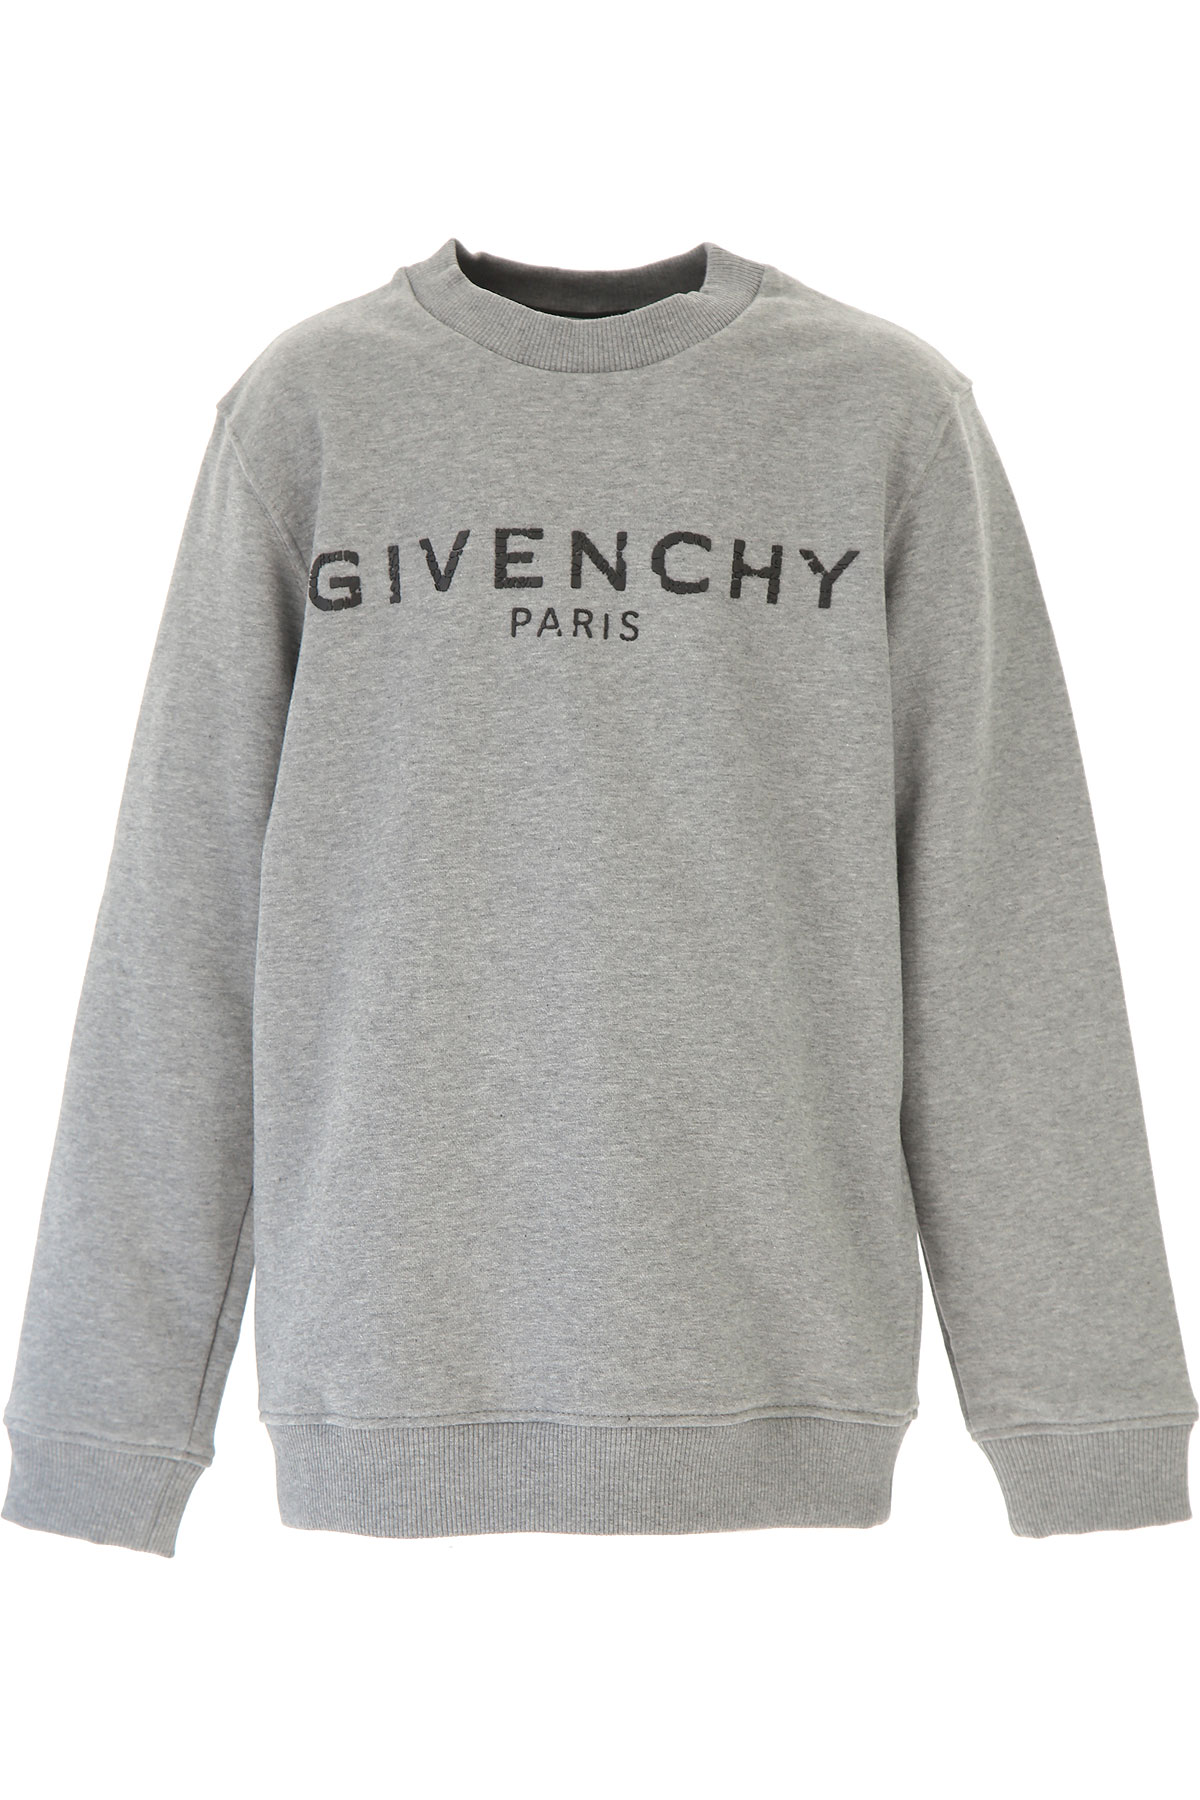 Givenchy Kinder Sweatshirt & Kapuzenpullover für Jungen, Grau, Baumwolle, 2017, 10Y 4Y 6Y 8Y